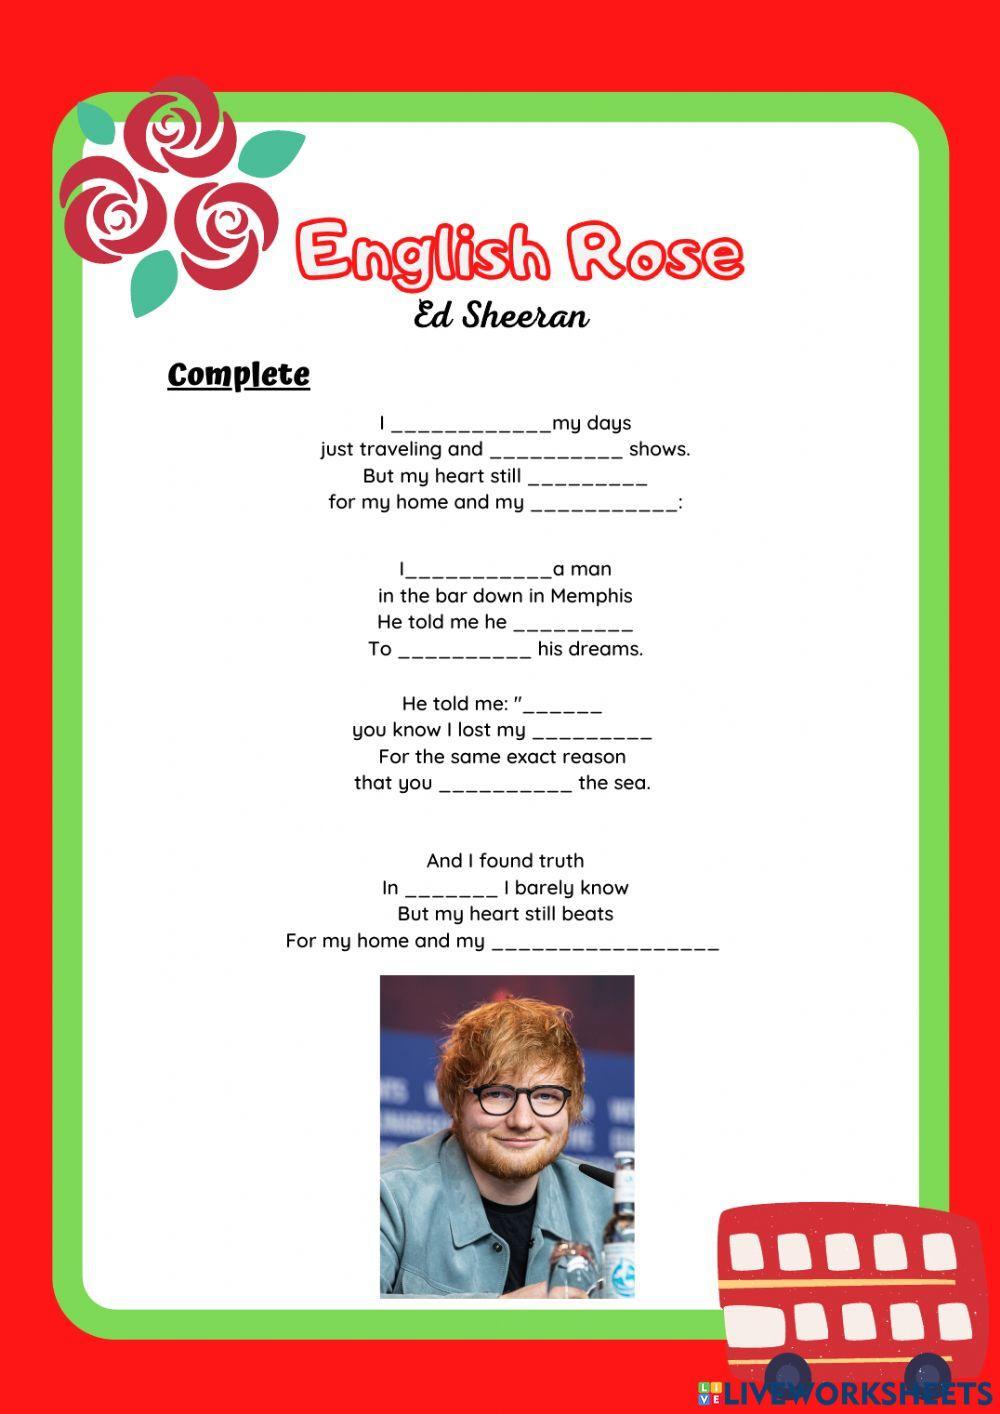 English rose - Ed Sheeran